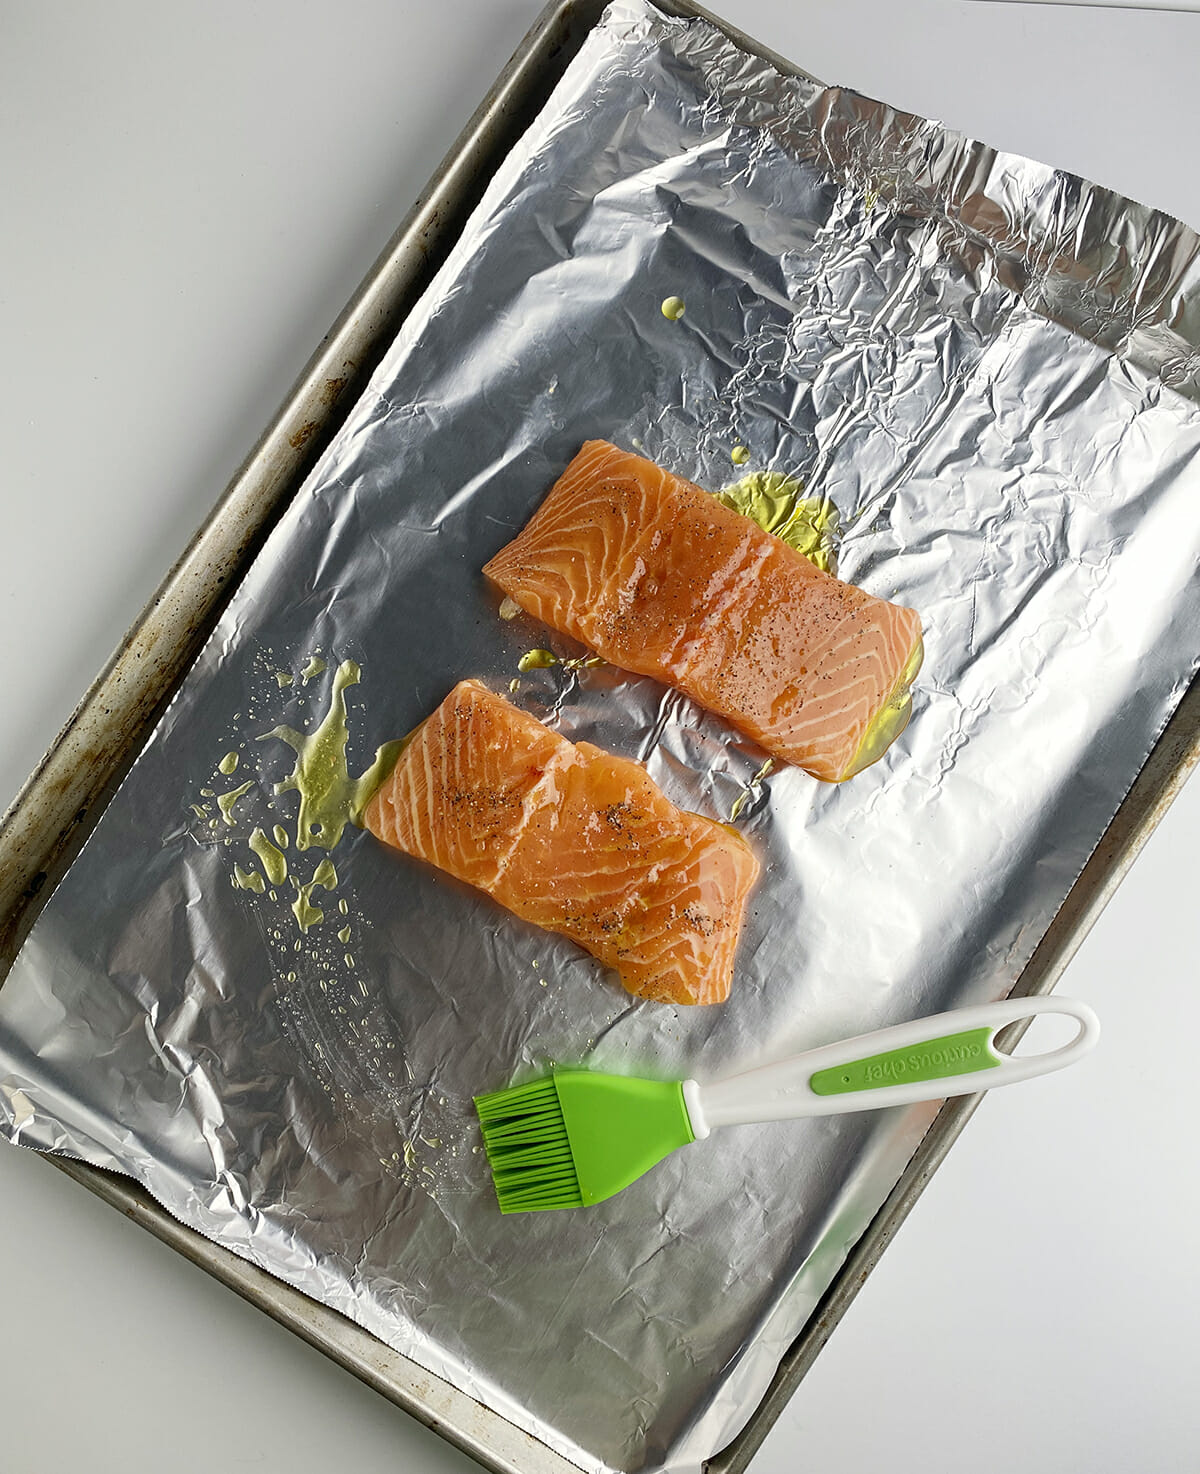 Basted salmon on baking sheet